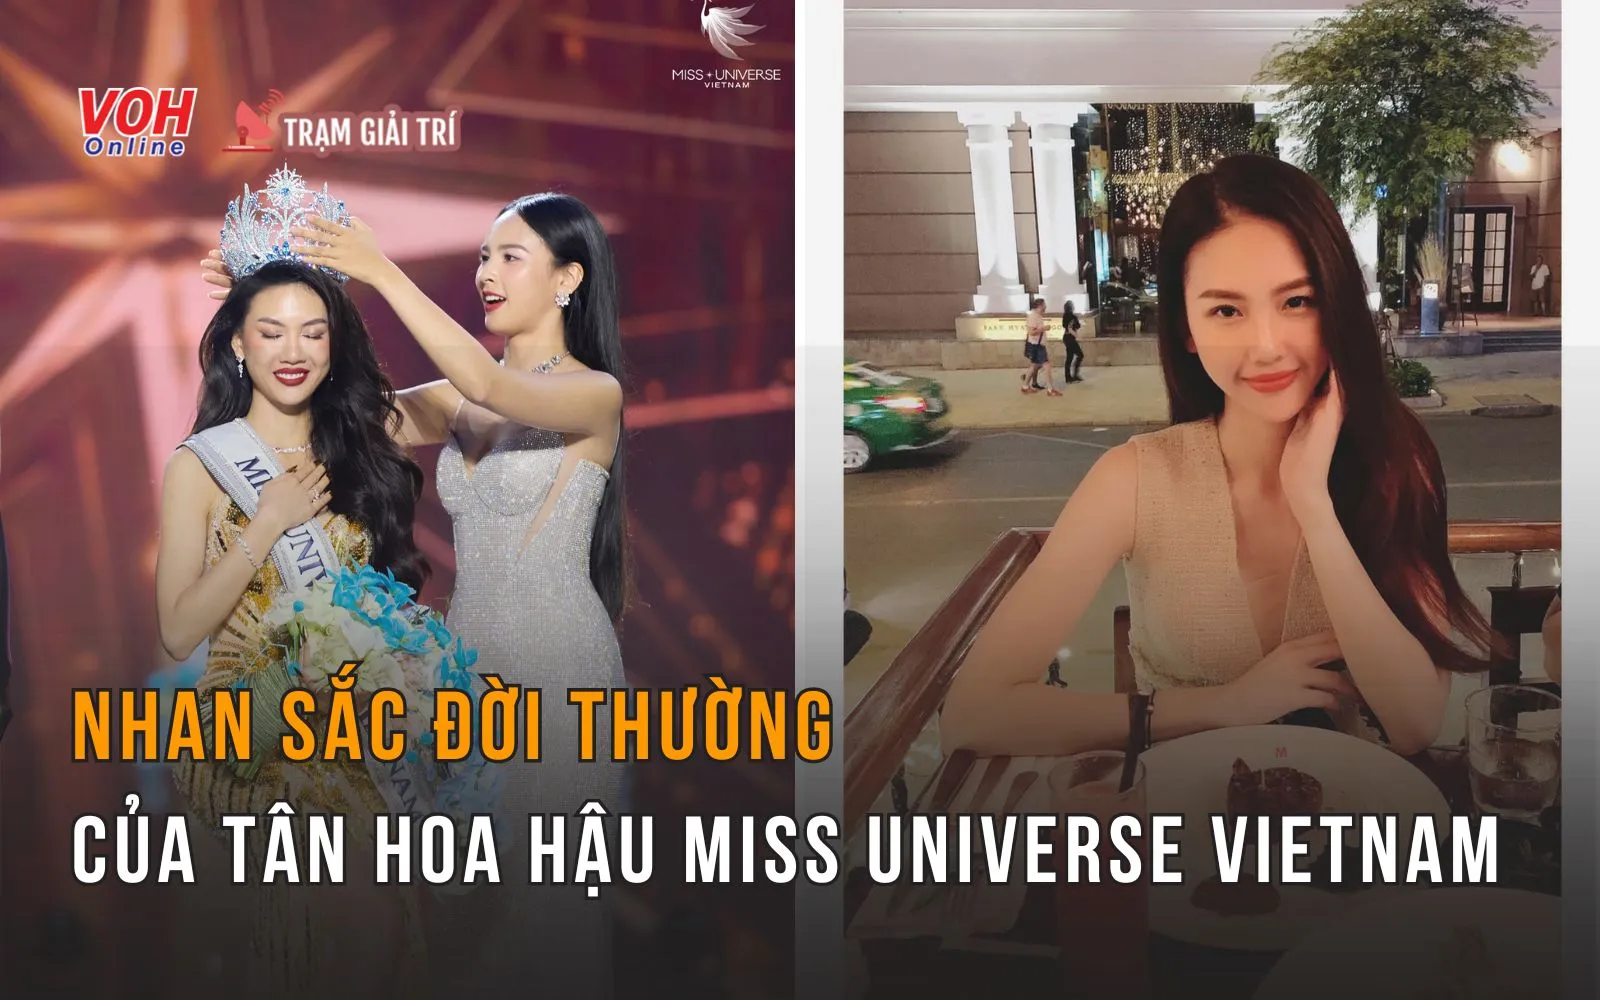 Nhan sắc đời thường gây thương nhớ của tân hoa hậu Miss Universe Vietnam